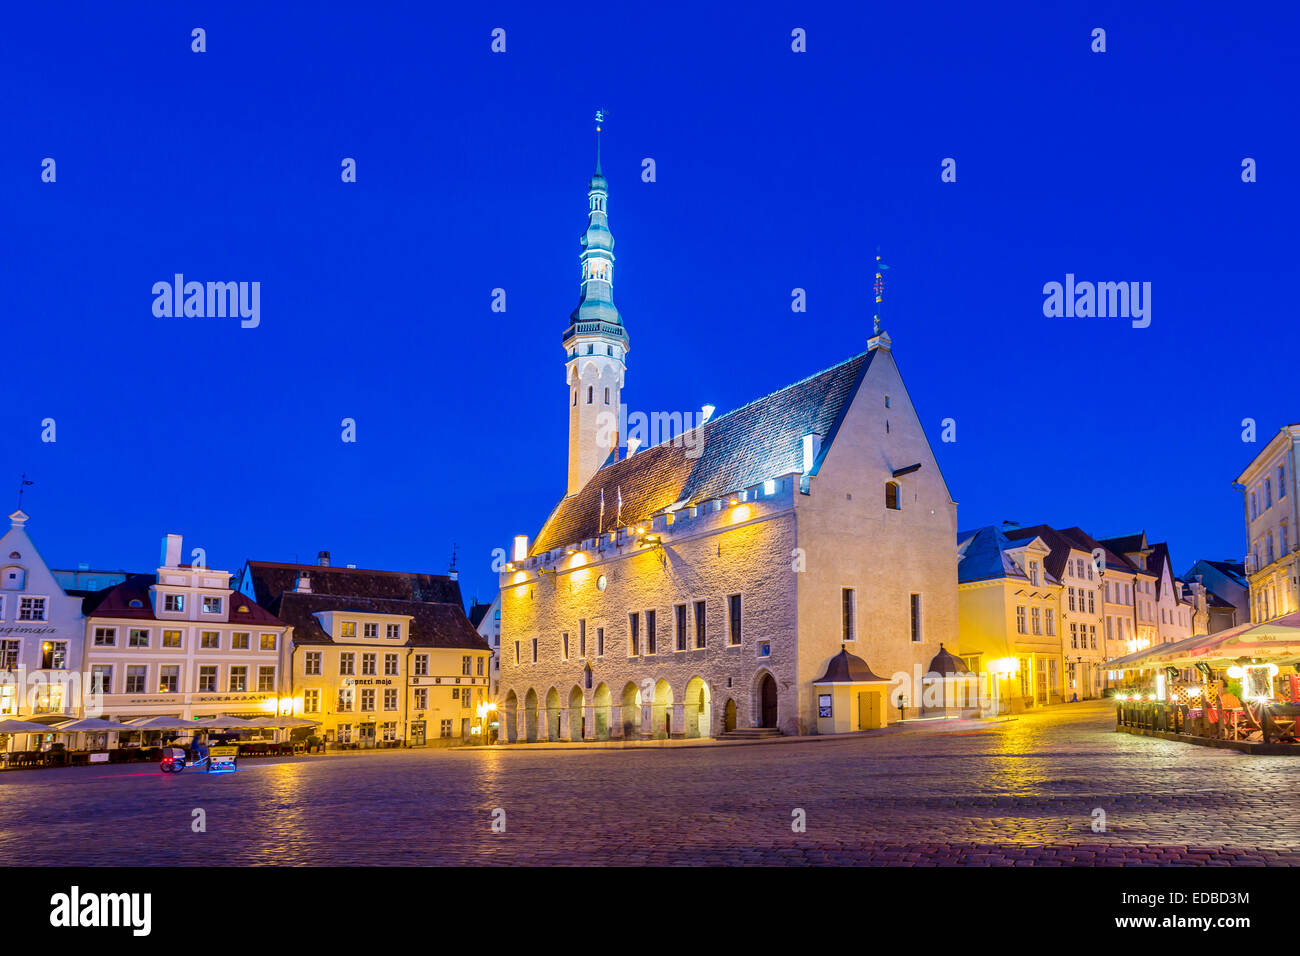 Hôtel de ville gothique sur la place de la ville dans la vieille ville à l'heure bleue, Tallinn, Estonie Banque D'Images